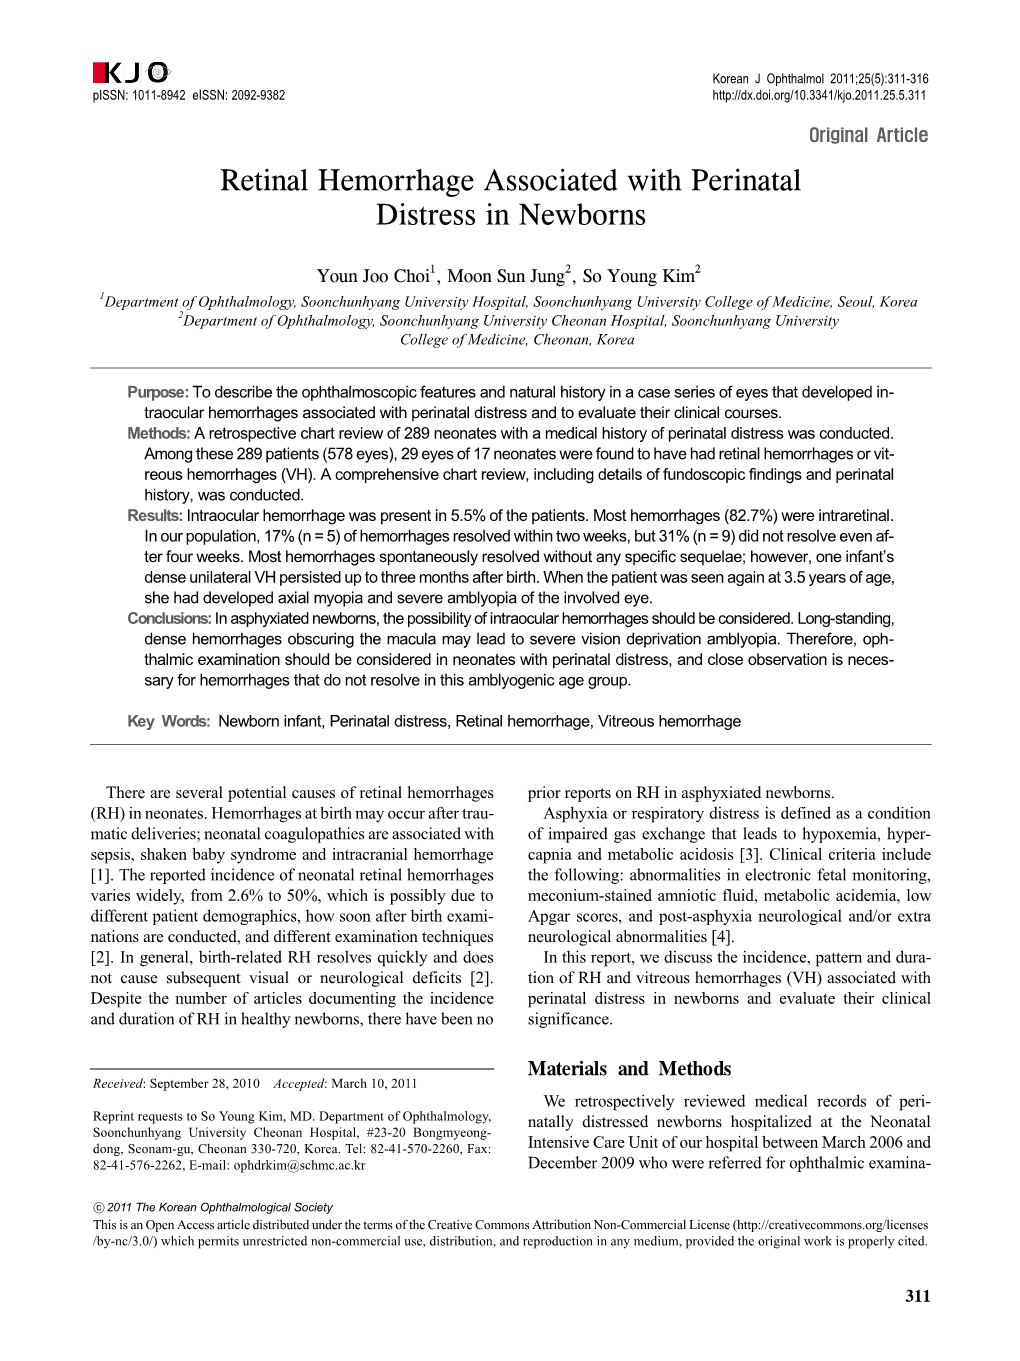 Retinal Hemorrhage Associated with Perinatal Distress in Newborns